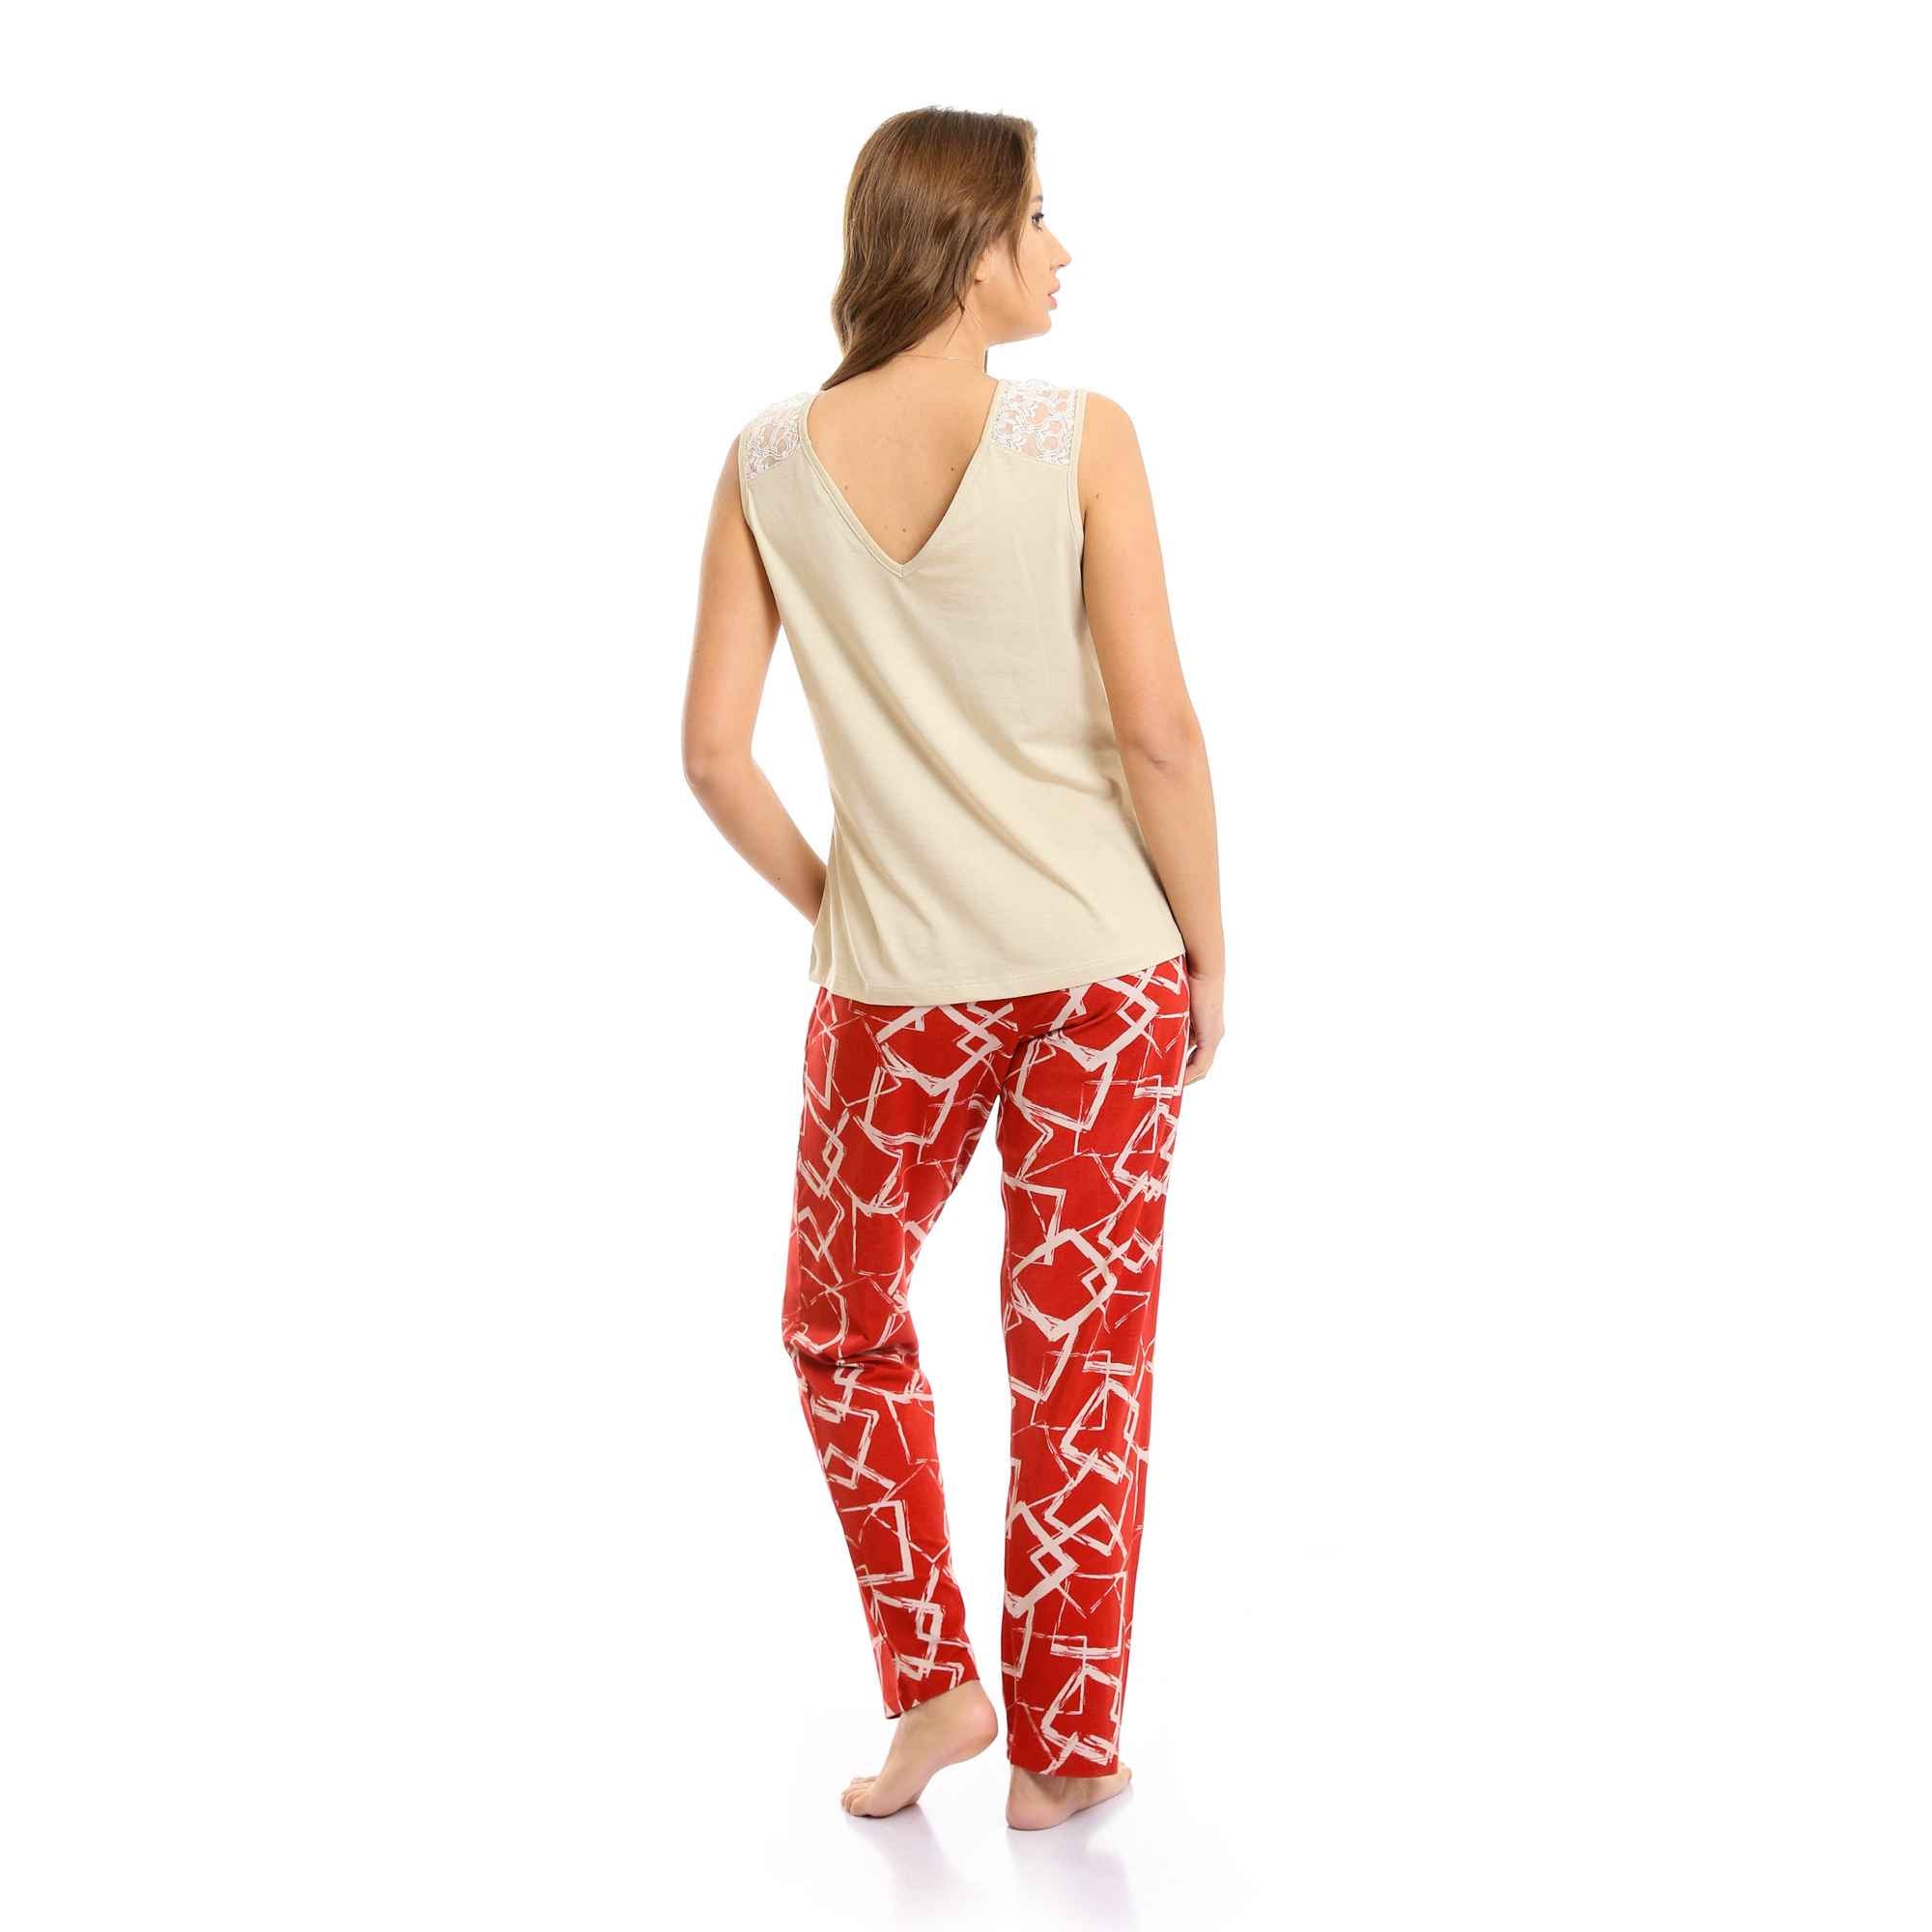 "Good Vibes" V-Neck Top & Patterned Pants Pajama Set - Beige & Red